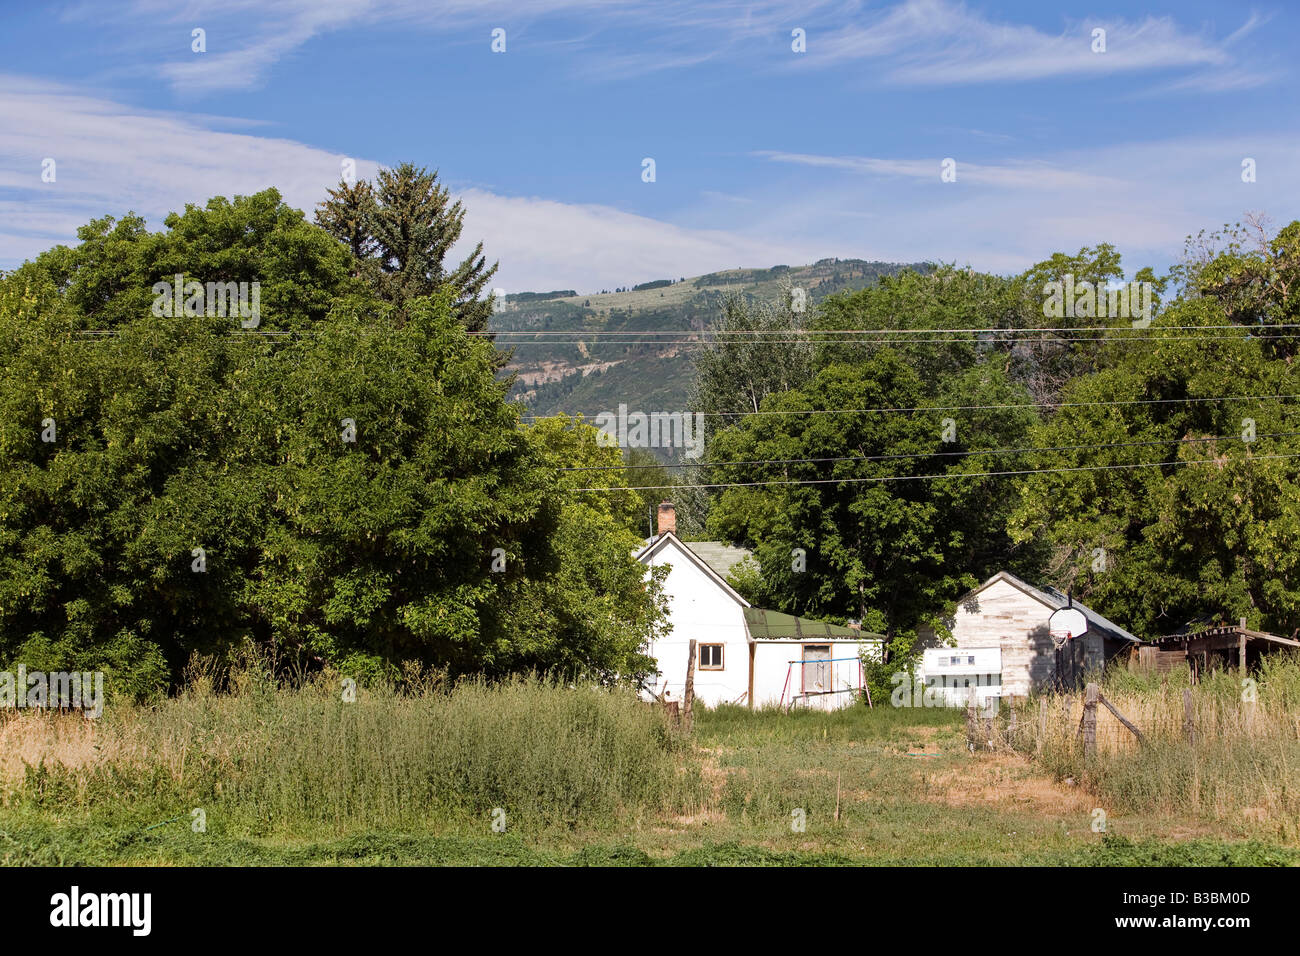 Kleine Pioniere Bauernhaus in zentrale Utah. Wasatch Mountains im Hintergrund. Alte Bäume und Garten. Stockfoto